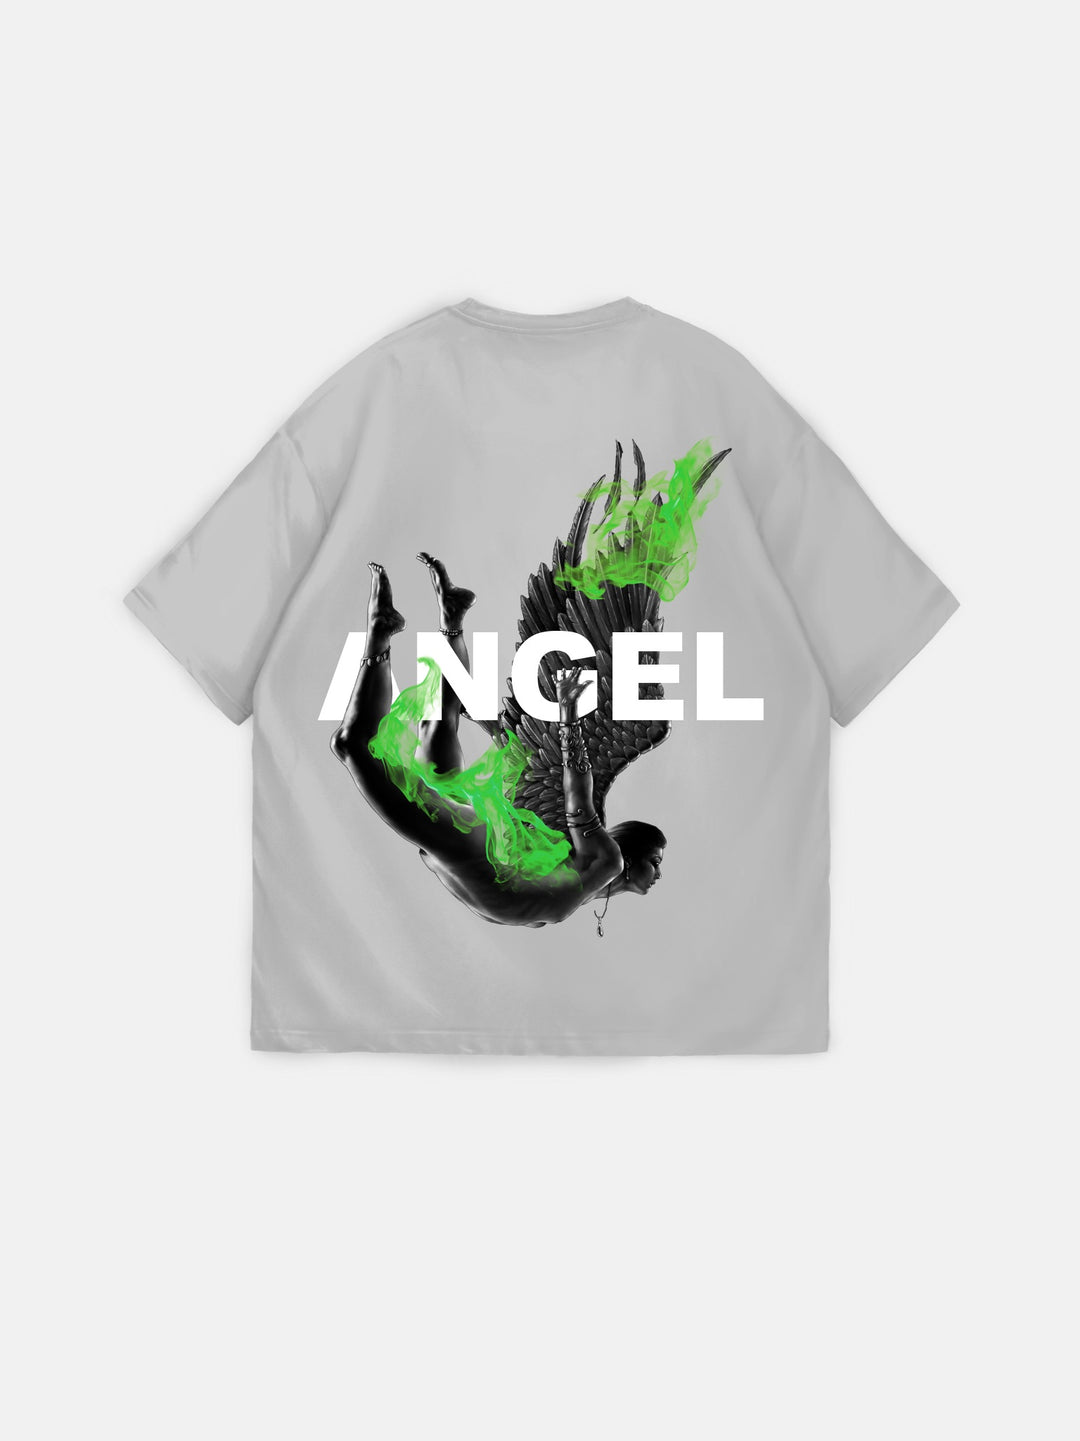 Oversize Fire Angel T-Shirt - Grey